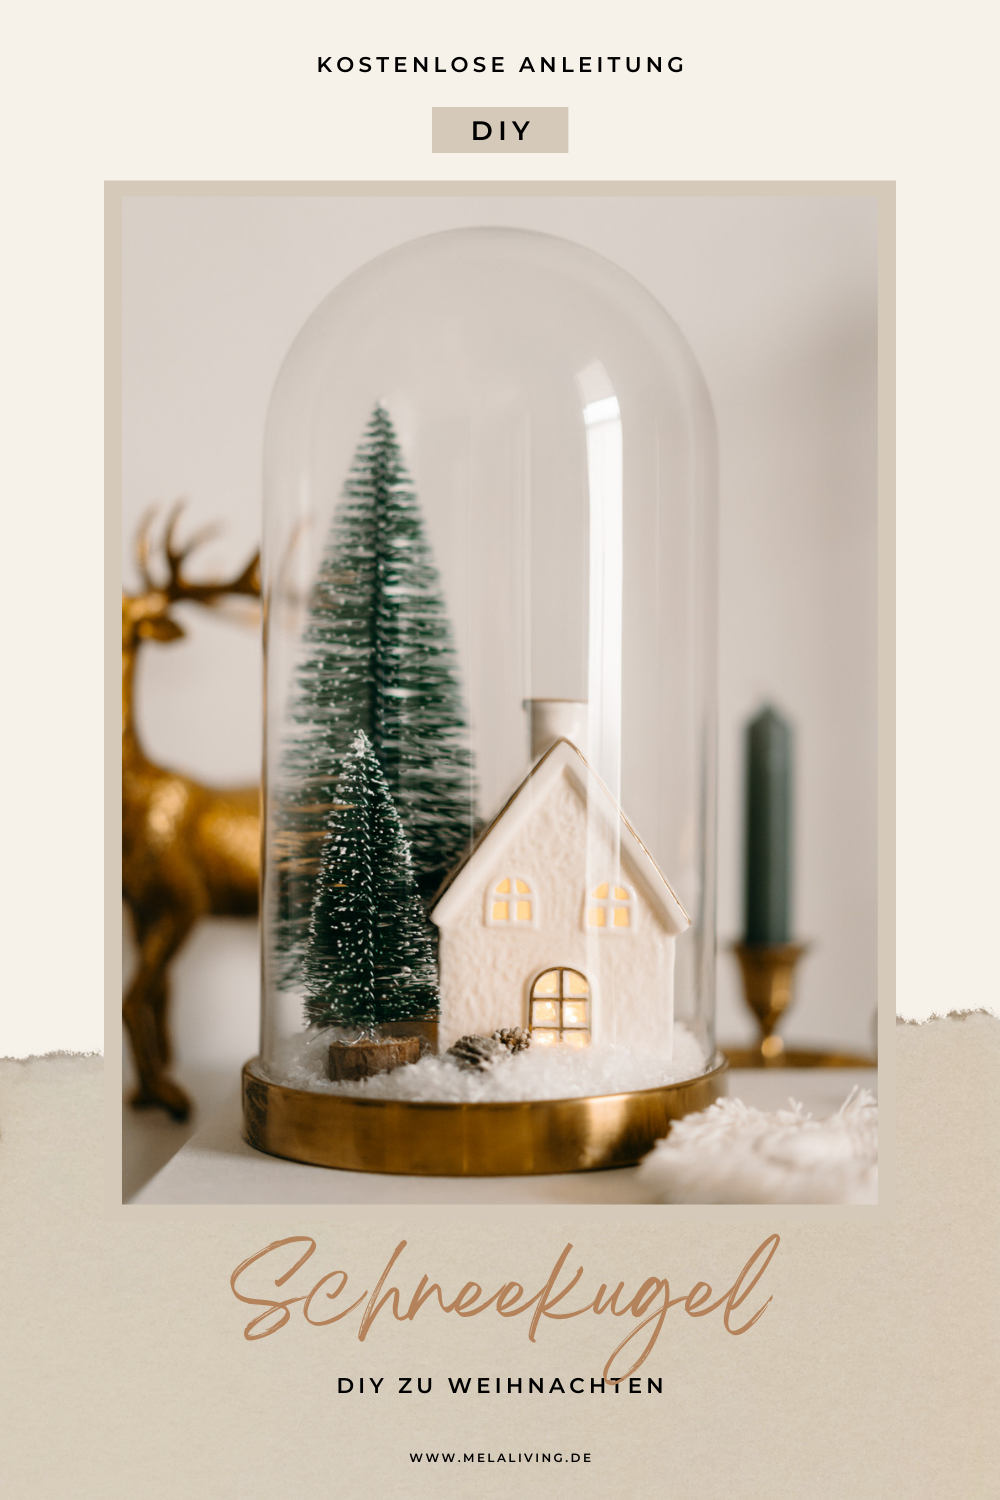 Was gibt es gemütlicheres, als zur Adventszeit Weihnachtsdeko selber zu machen? Heute bastle ich aus einer Glasglocke eine weihnachtliche DIY Schneekugel. Dazu brauchst du Kunstschnee, zwei Mini-Tannenbäume und ein kleines Kerzenhäuschen mit Lichterkette. Hier geht’s zur kostenlosen Anleitung #weihnachten #weihnachtsdeko #basteln #diy #selbermachen @melaliving 